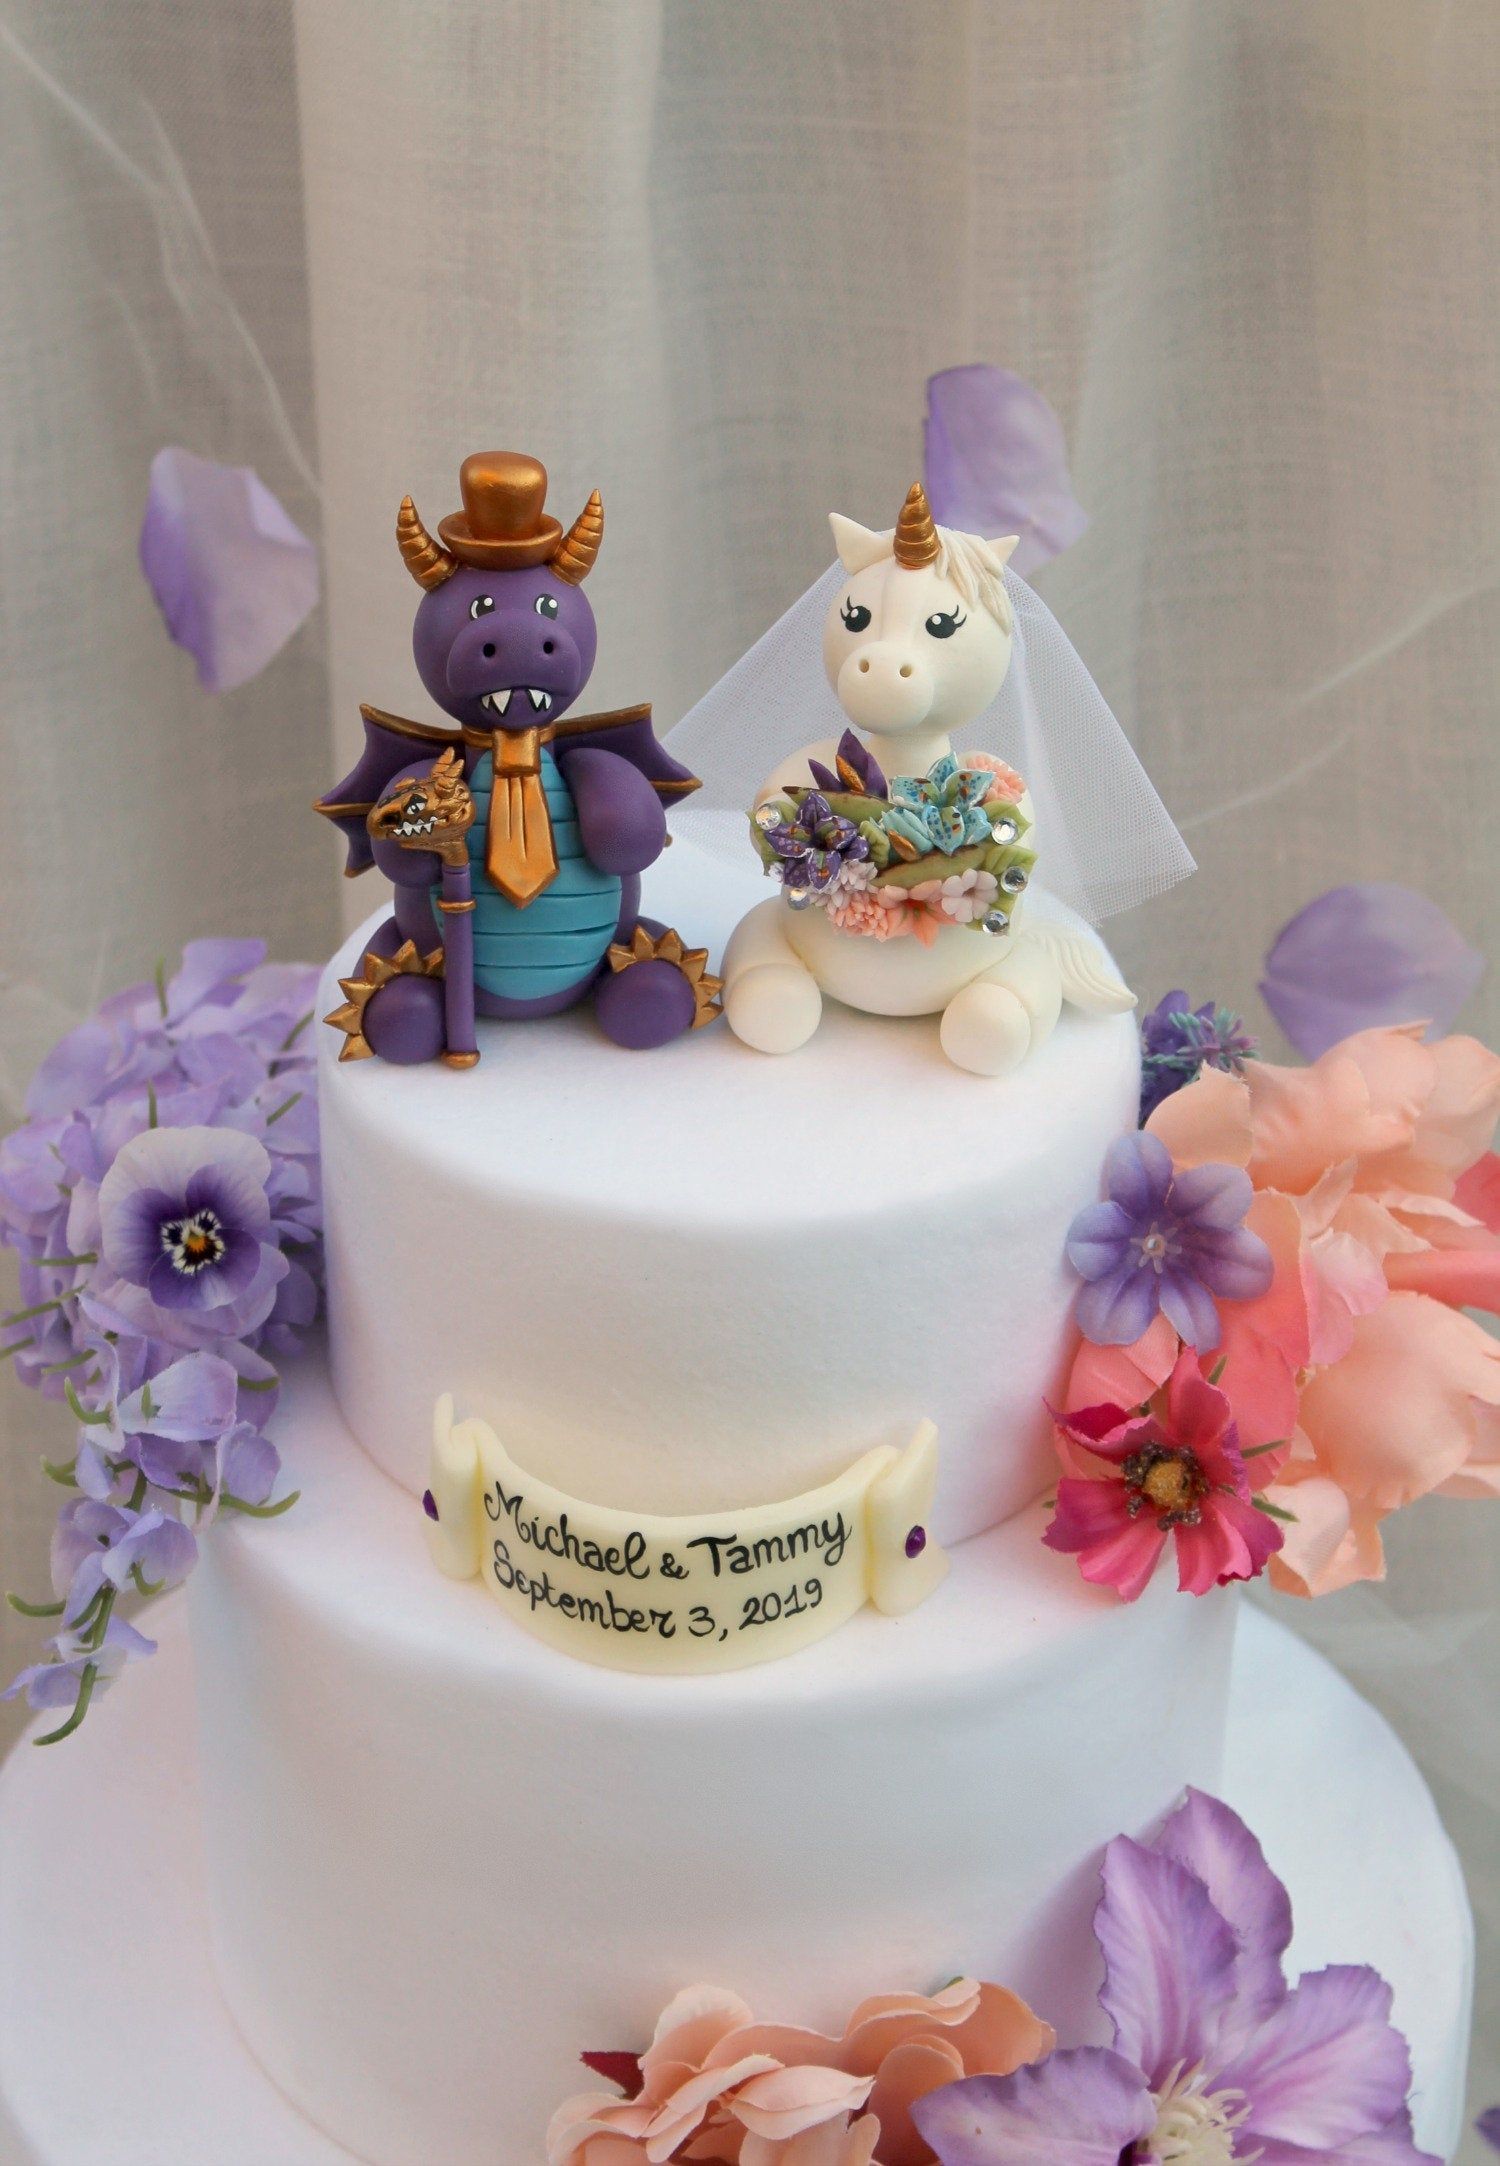 15 wedding cake Unicorn ideas